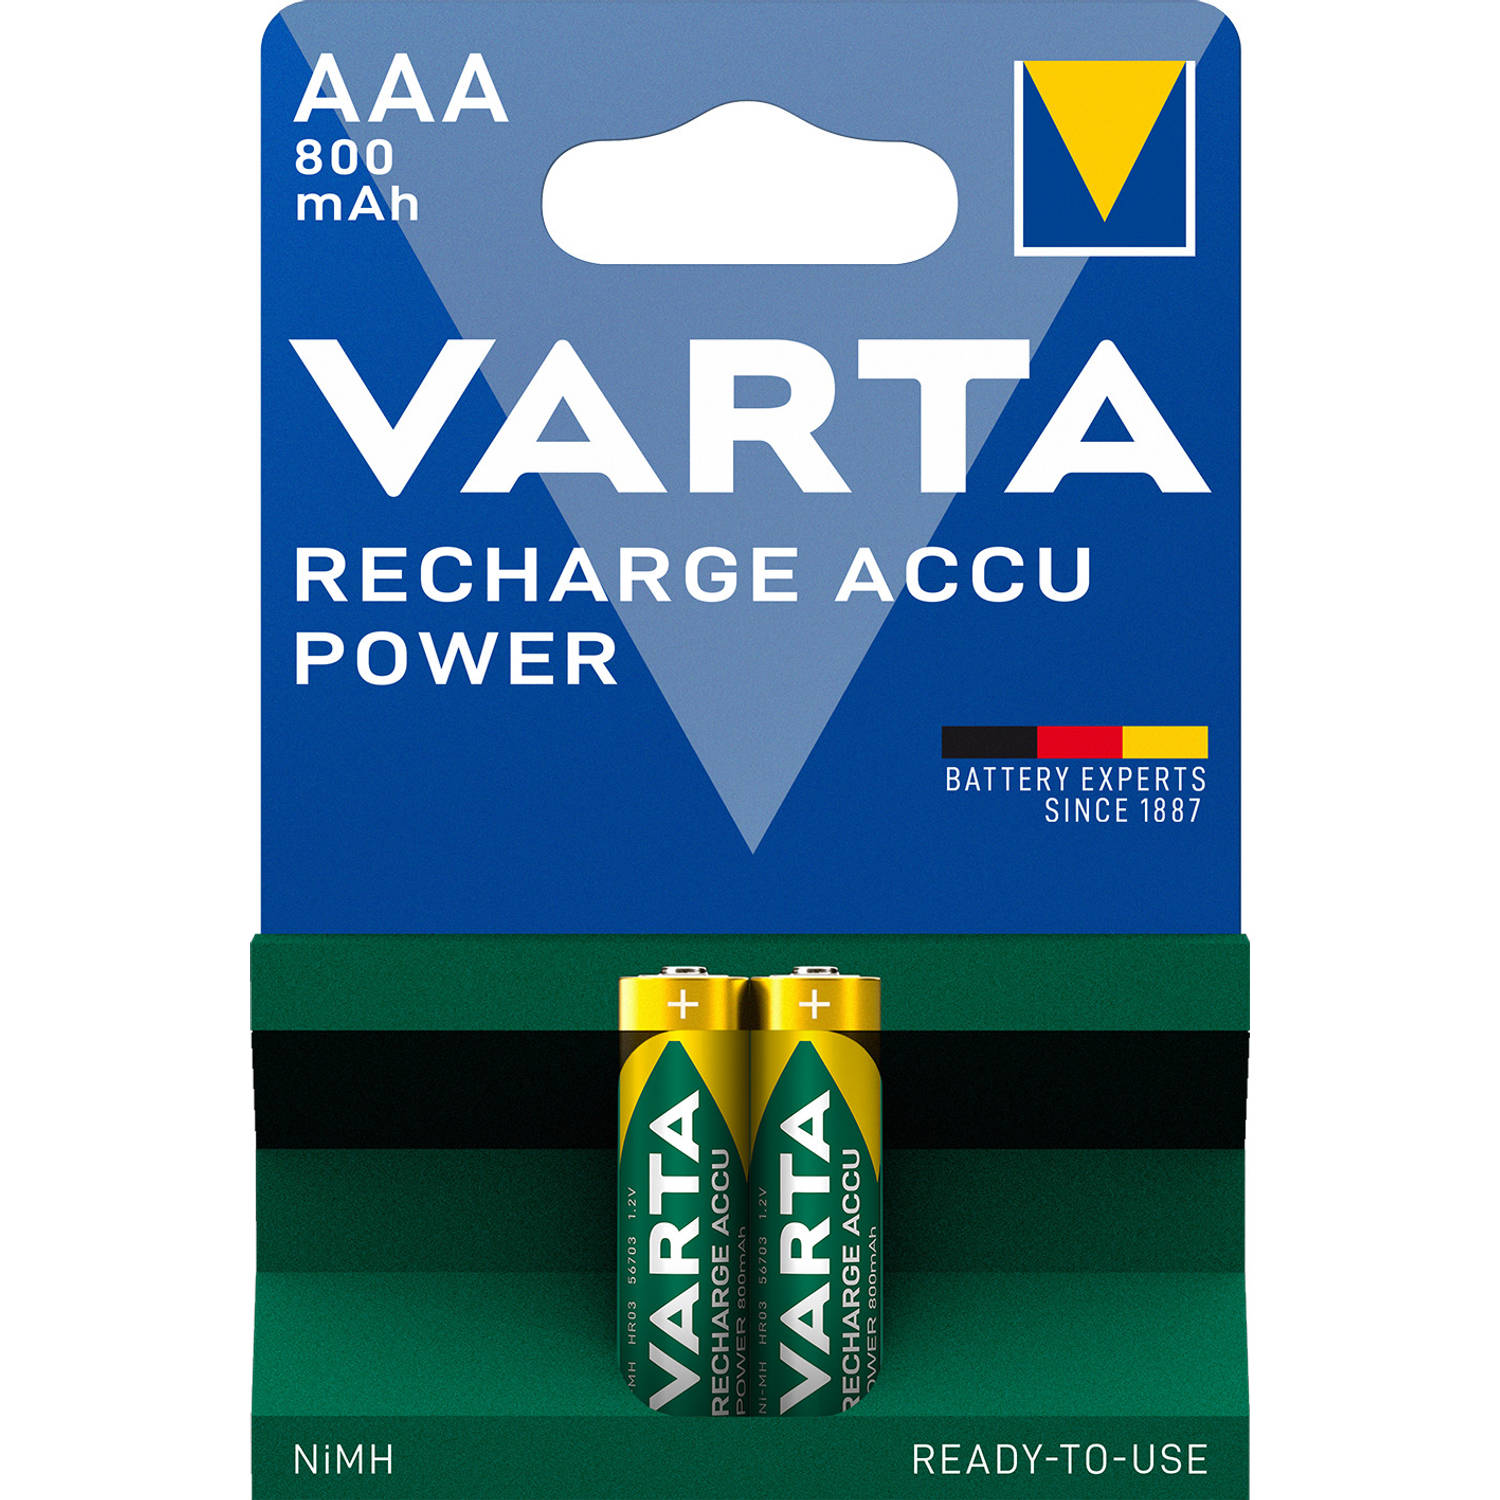 Gietvorm prachtig lenen Varta oplaadbare batterijen - AAA 800 mAh | Blokker